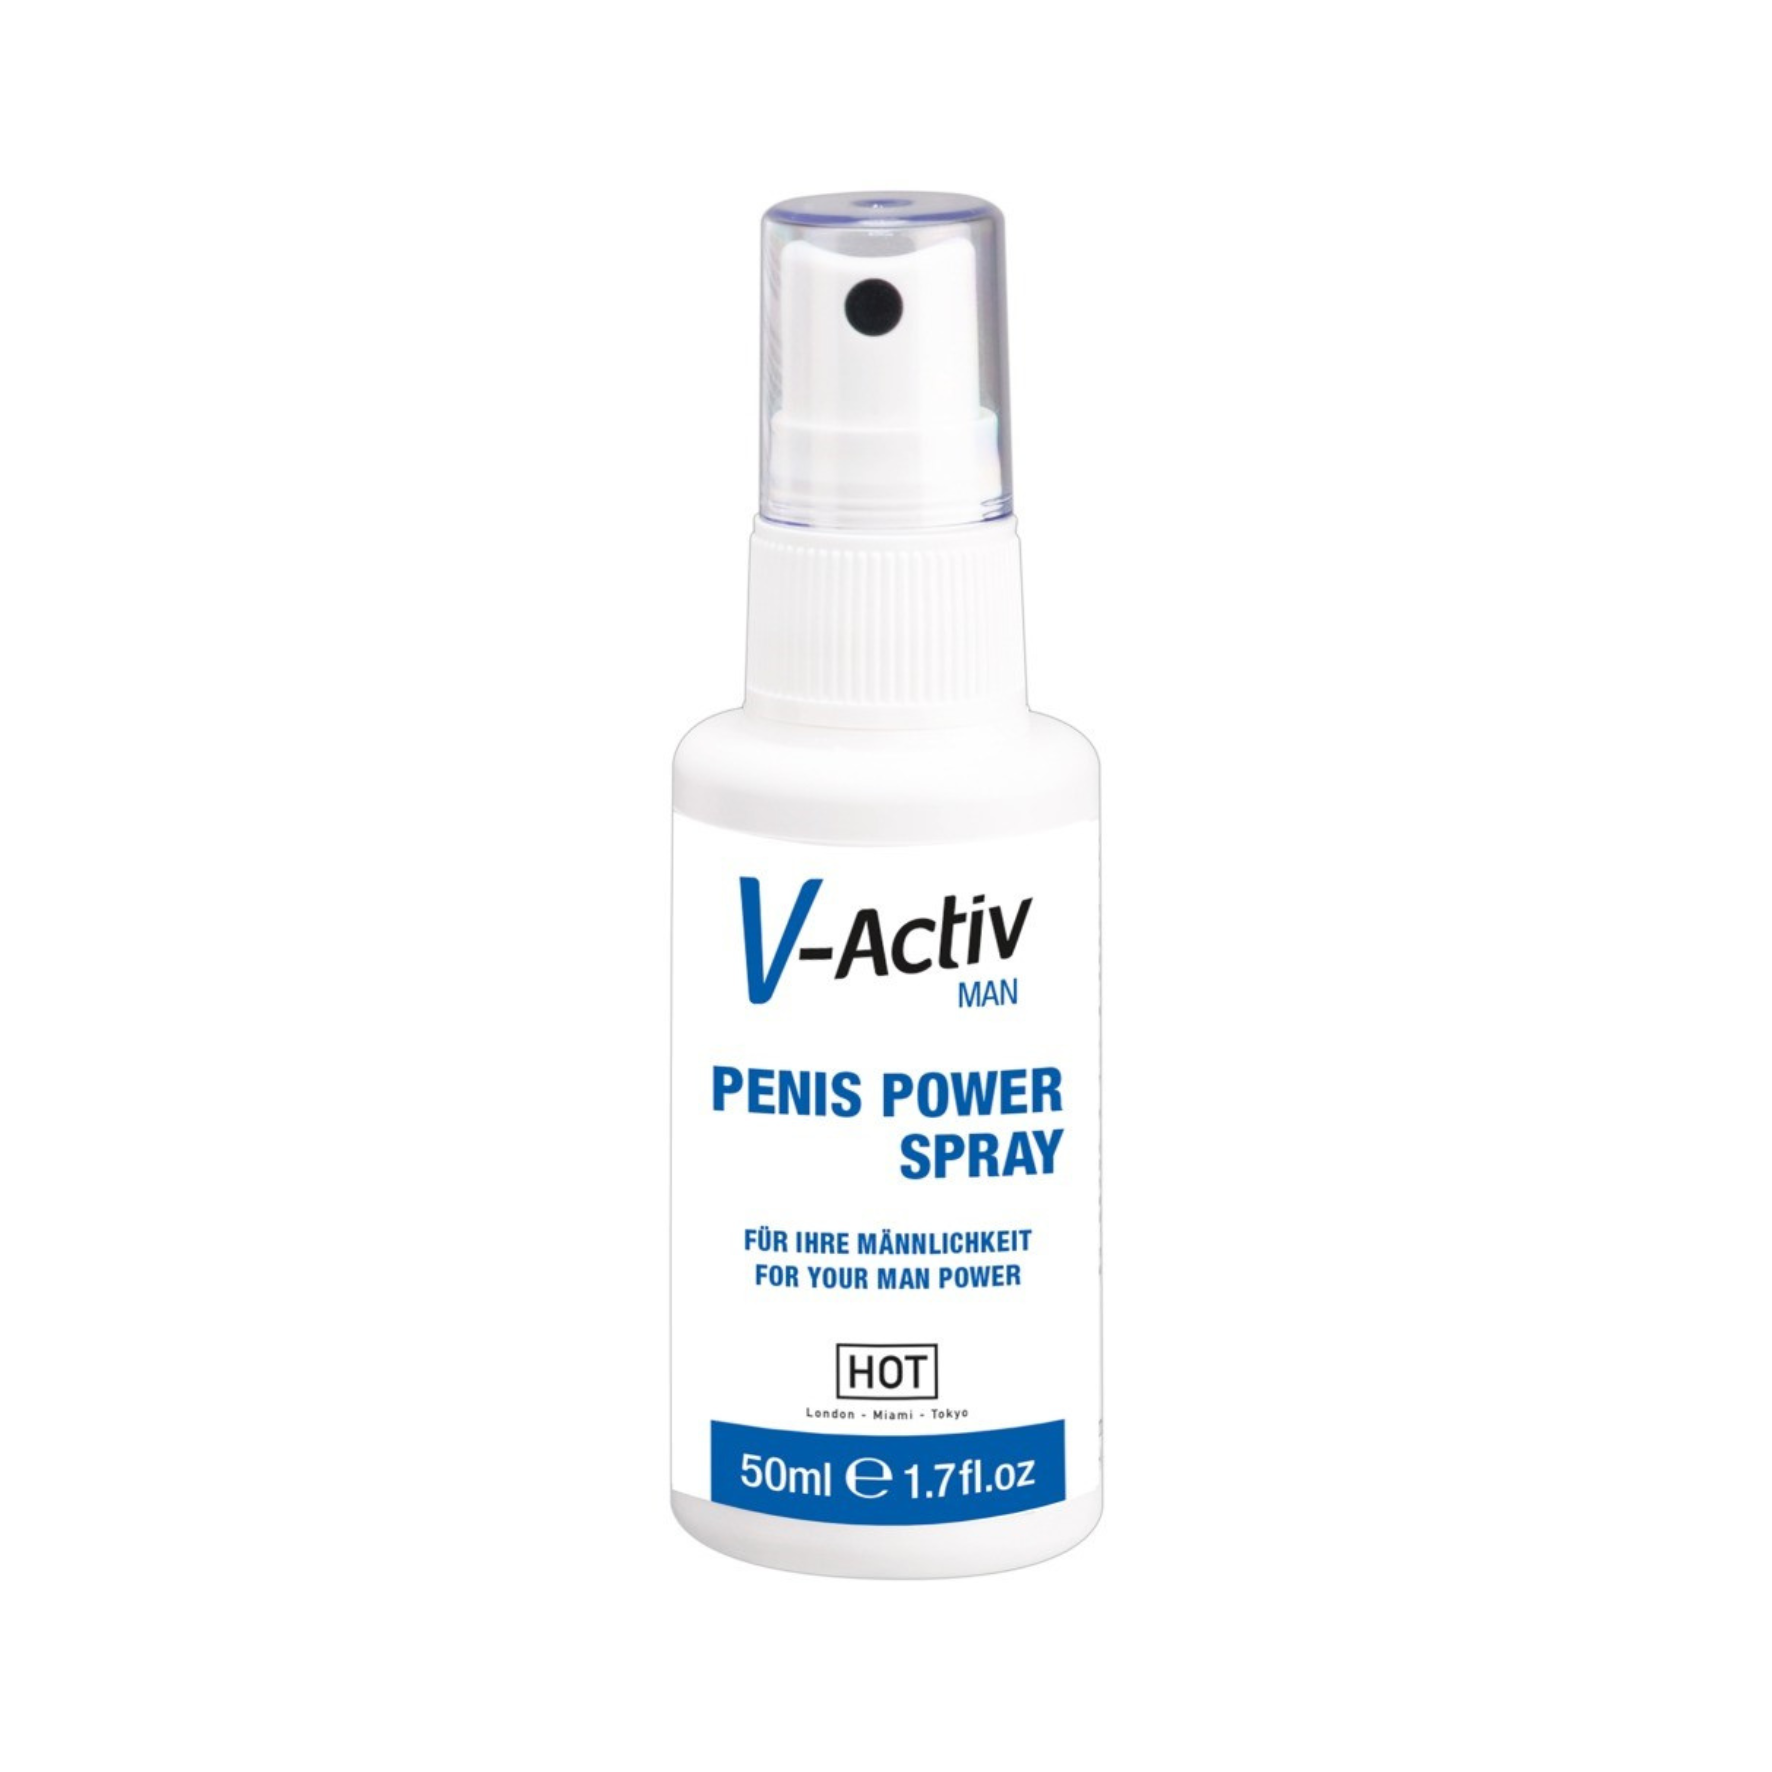 EREKCIJĄ STIPRINANTIS PURŠKIKLIS “HOT V-ACTIV PENIS POWER SPRAY” - 50 ML  
“HOT V-activ Penis Power Spray” - purškiklis sukurtas tiems, kurie nori daugiau. 
Šis  aukštos kokybės  purškiklis sukurtas naudojant išskirtinį  kraujotaką stimuliuojančių ir maitinančių ingredientų derinį  bei yra  praturtintas natūraliu ginkmedžio ekstraktu .  
Dėka unikalios sudėties, purškiklis  iškart sukelia intensyvią kraujotaką varpoje , padidina jautrumą ir orgazmo intensyvumą bei  gali padėti išlaikyti šį poveikį visą naktį . 
Naudojant kasdien, purškiklis  gali turėti teigiamą poveikį  Jūsų potencijai ir seksualiniam aktyvumui. 
Kaip naudoti?  
Užpurkškite šiek tiek purškiklio ant varpos ir sėklidžių. Tuomet švelniai masažuokite. 
Prieš užsidėdami prezervatyvą palaukite apie 5 minutes, kol purškiklis visiškai įsigers į odą. 
Preliudija gali būti labai erotiška , jei partneris perima masažo kontrolę.